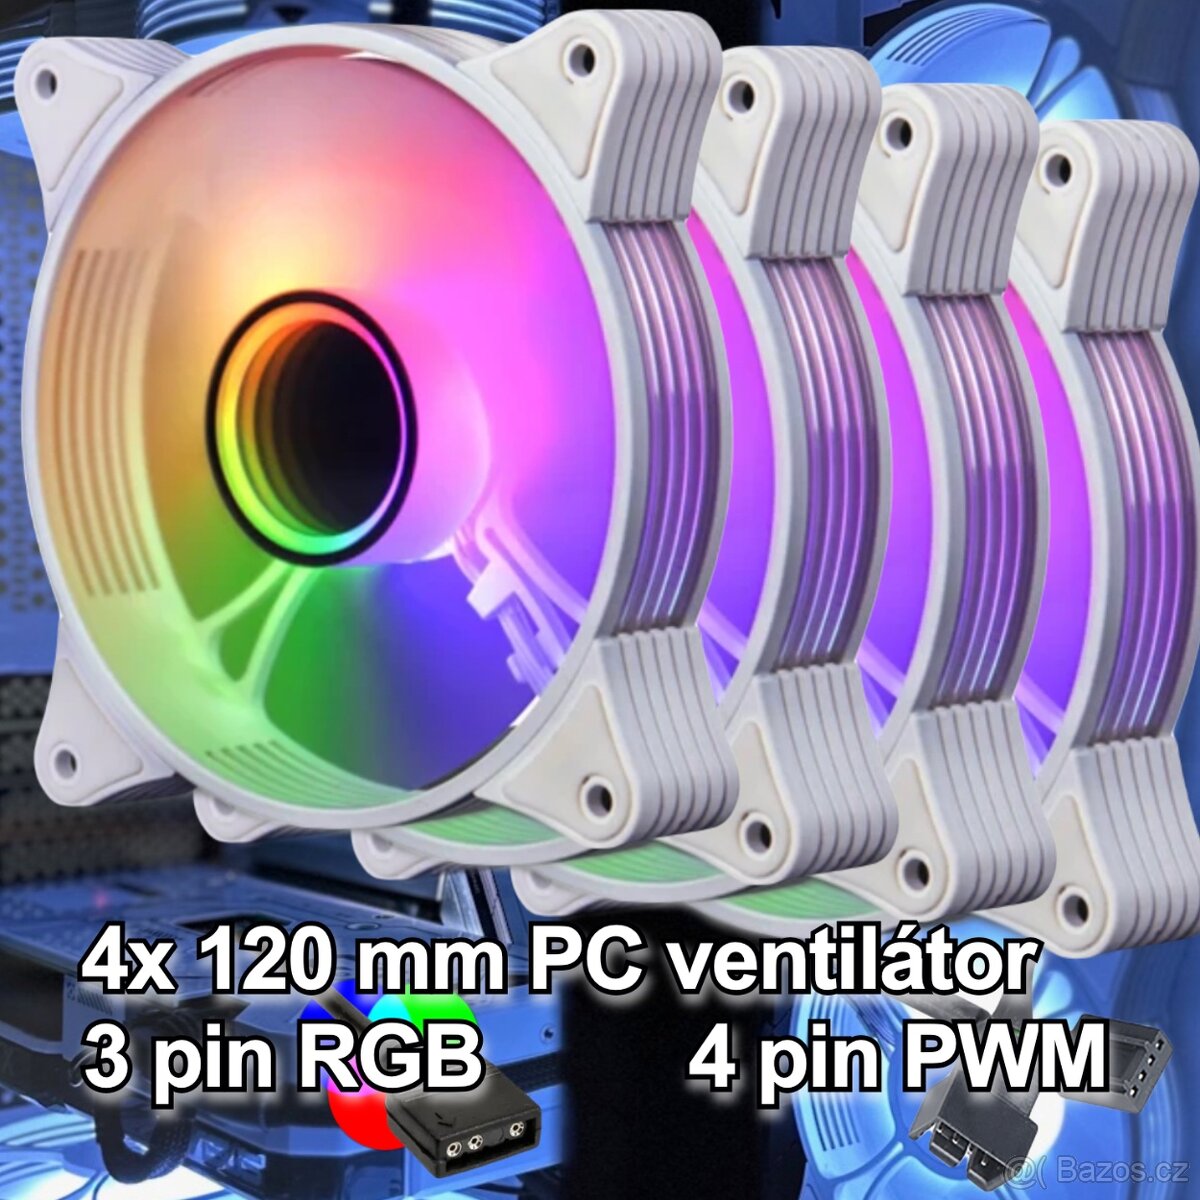 Bílý RGB PC větráček ventilátor 120mm 5V 3 pin aRGB, PWM(4x)